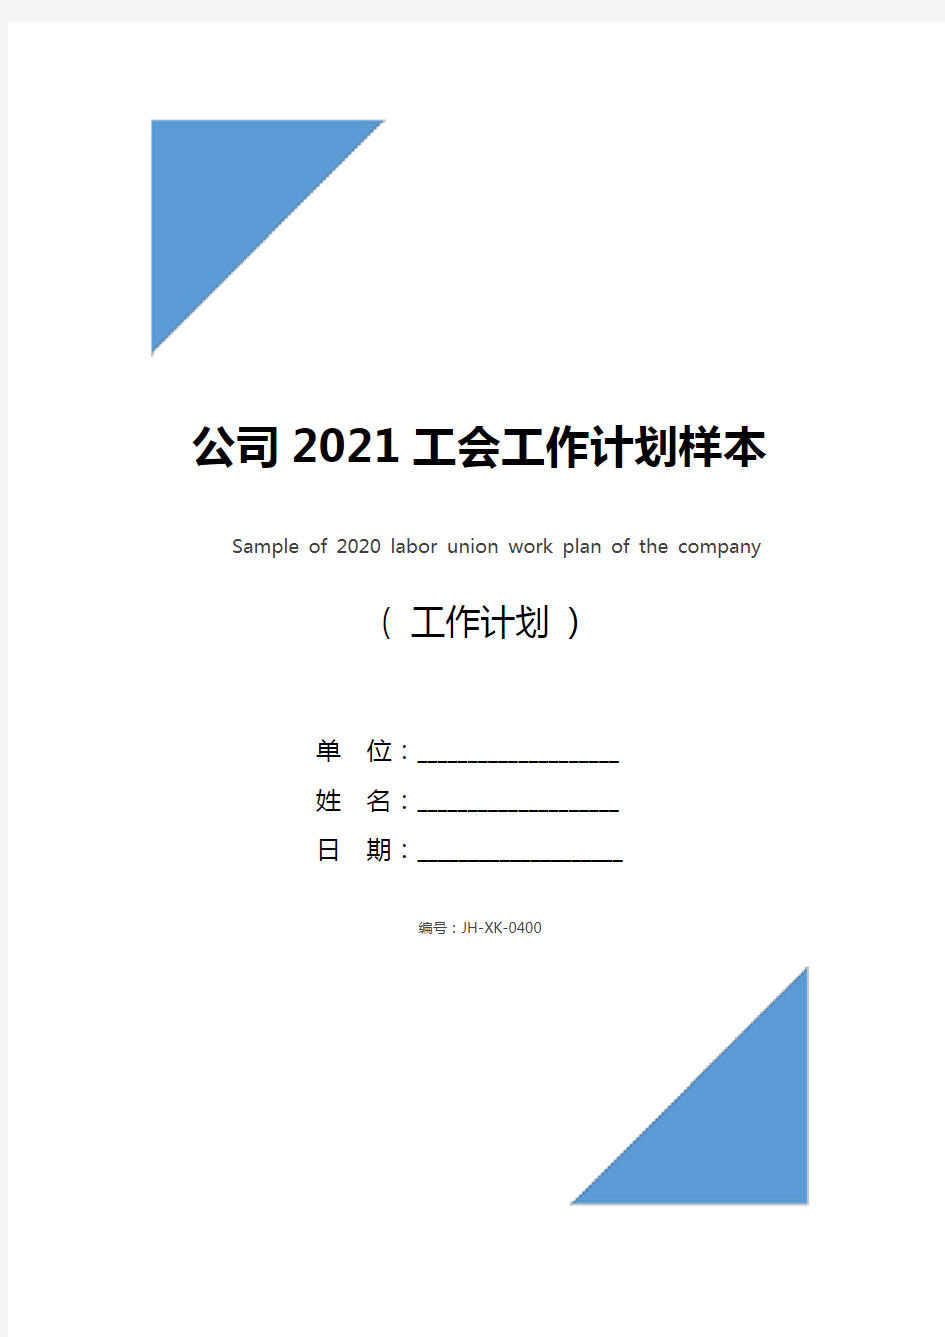 公司2021工会工作计划样本(通用版)